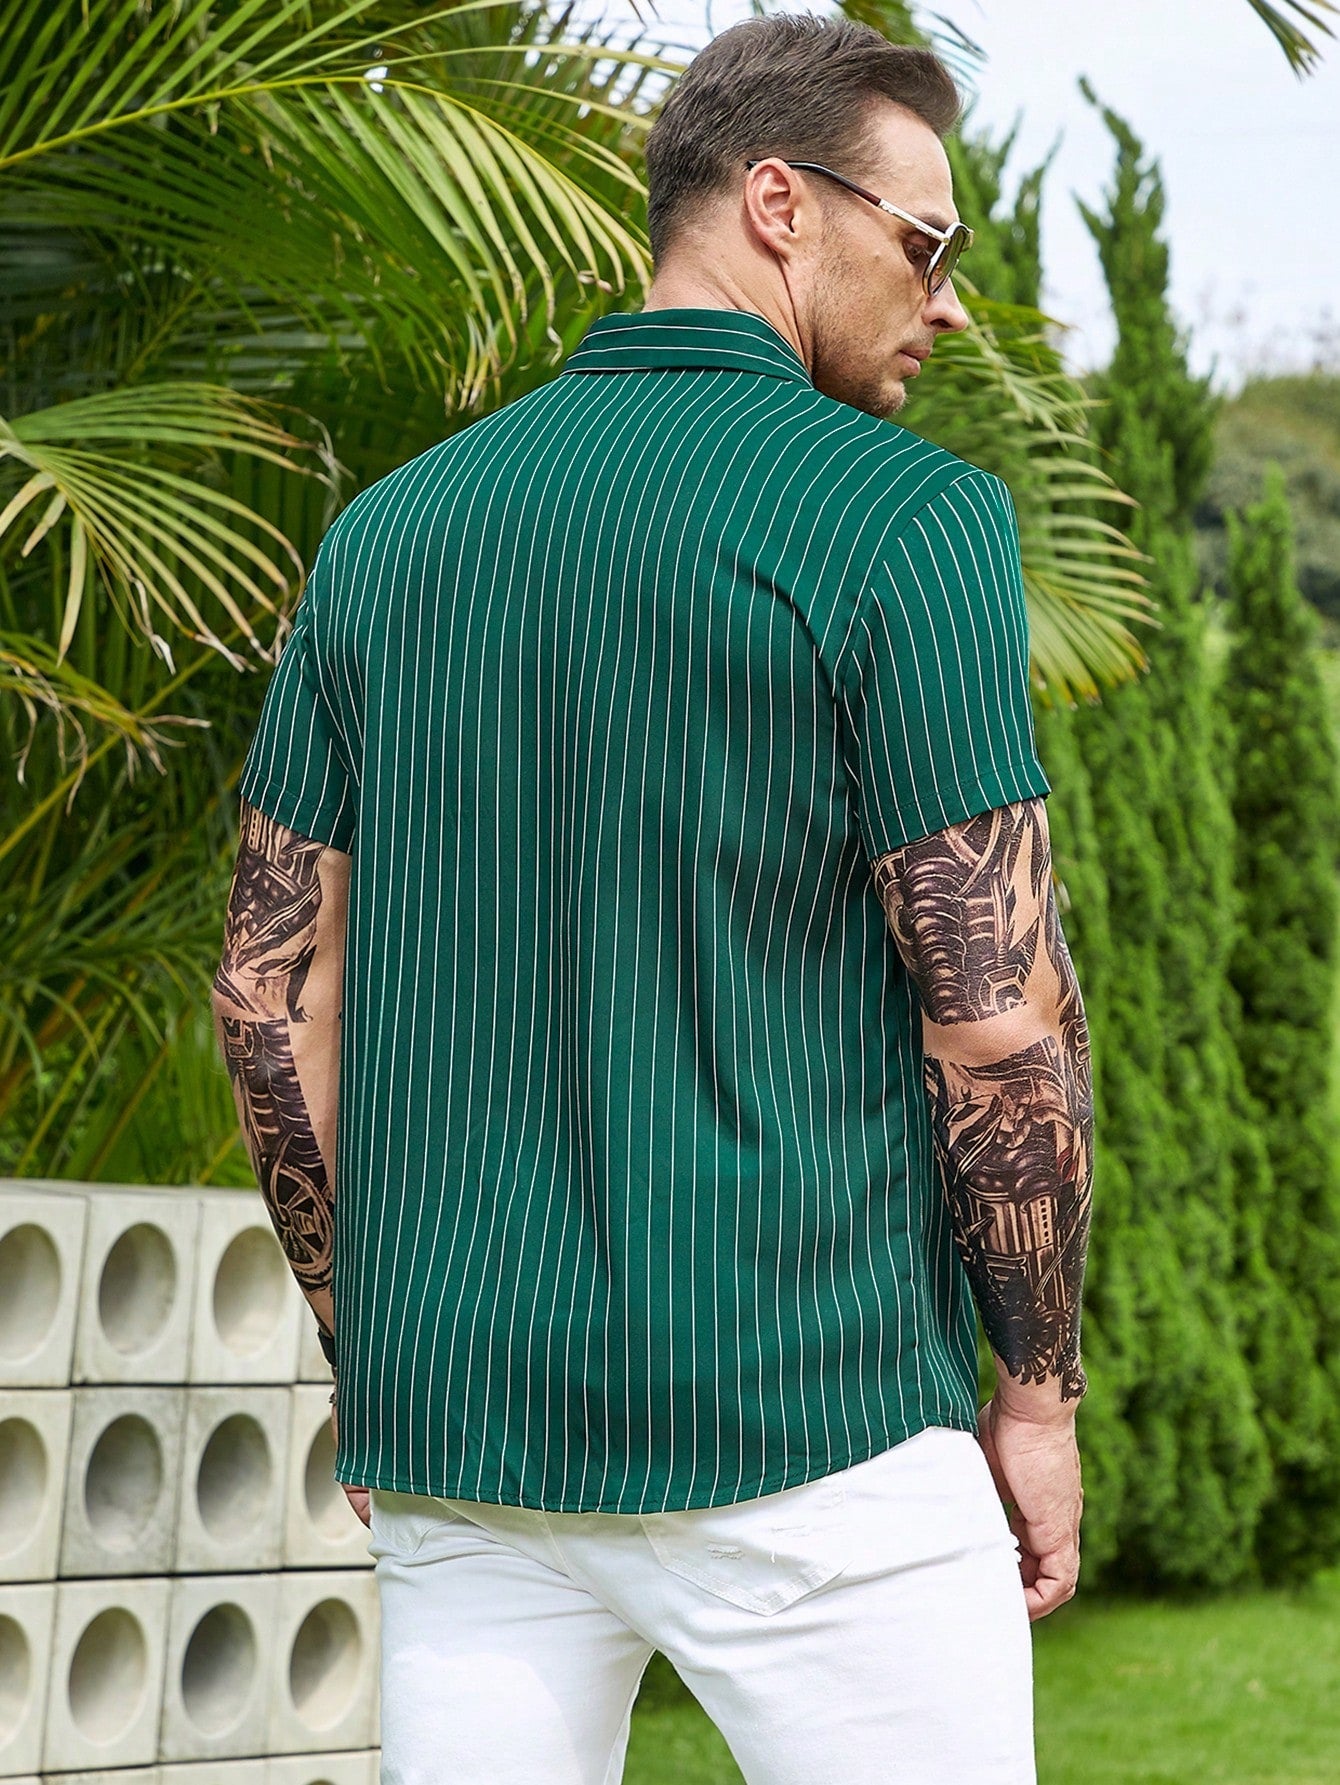 Manfinity Homme Men Striped Print Shirt - NextthinkShopsm2304084740473783